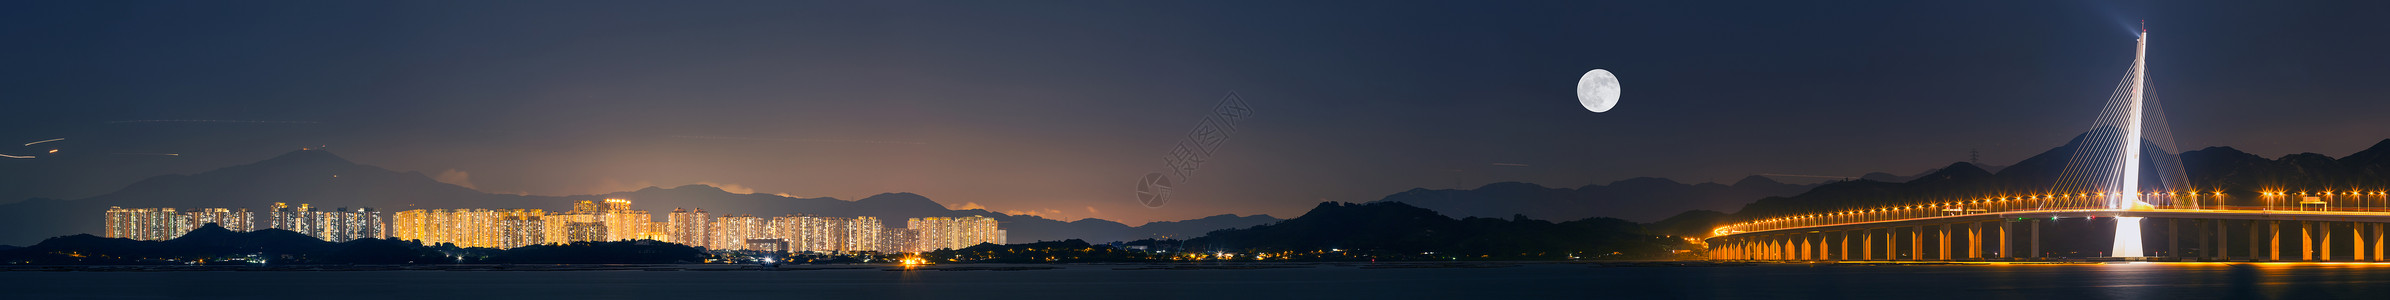 二十四桥明月夜深圳湾跨海大桥城市风光夜景全景图背景